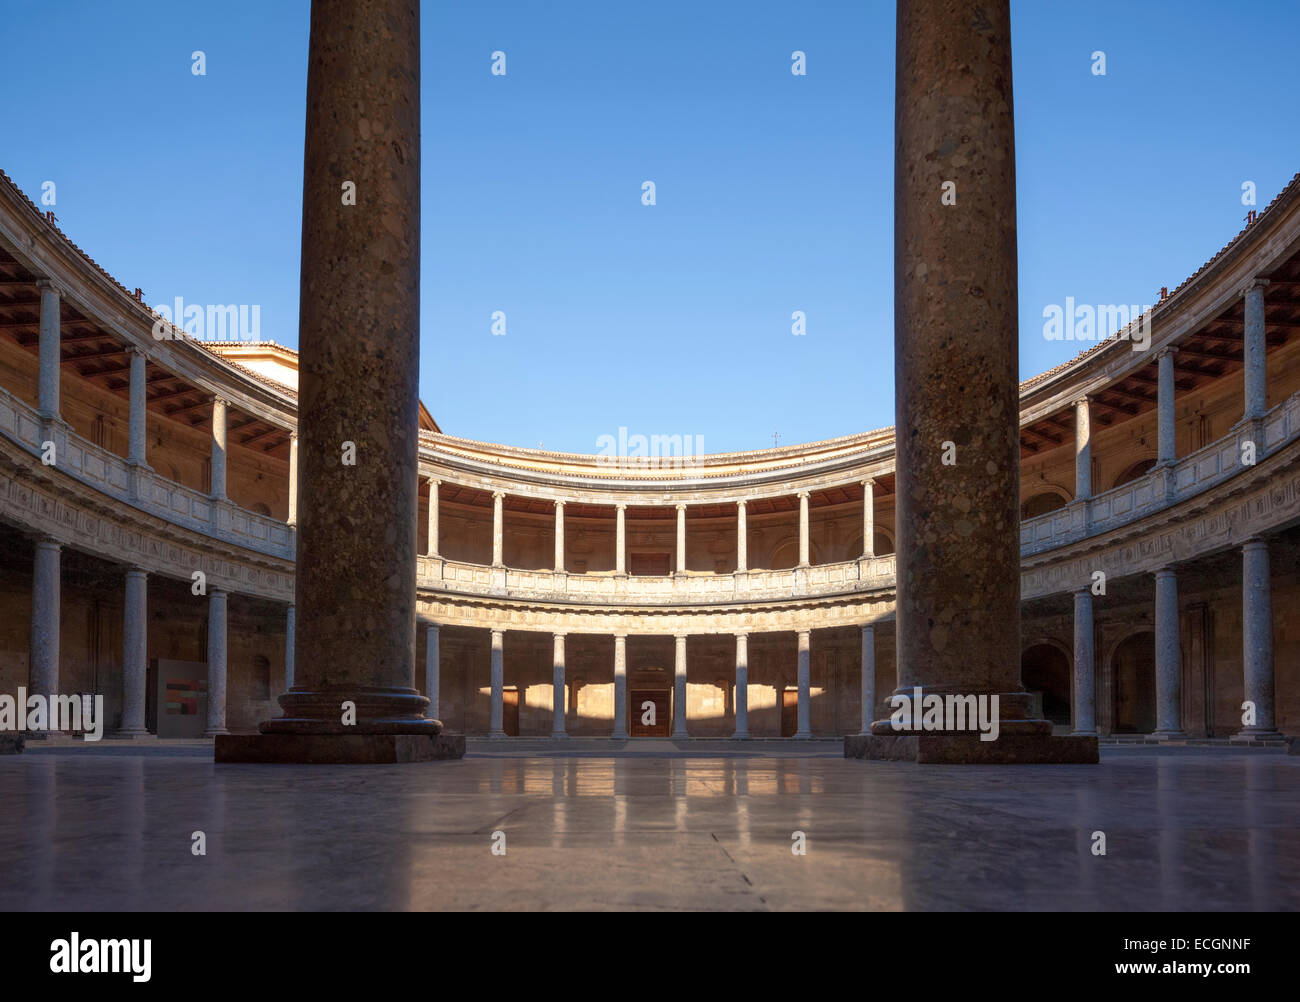 Renaissance-Palast von Heiliger römischer Kaiser Charles V in der Alhambra Granada Spanien. Palacio Carlos V. runden Innenhof. Stockfoto